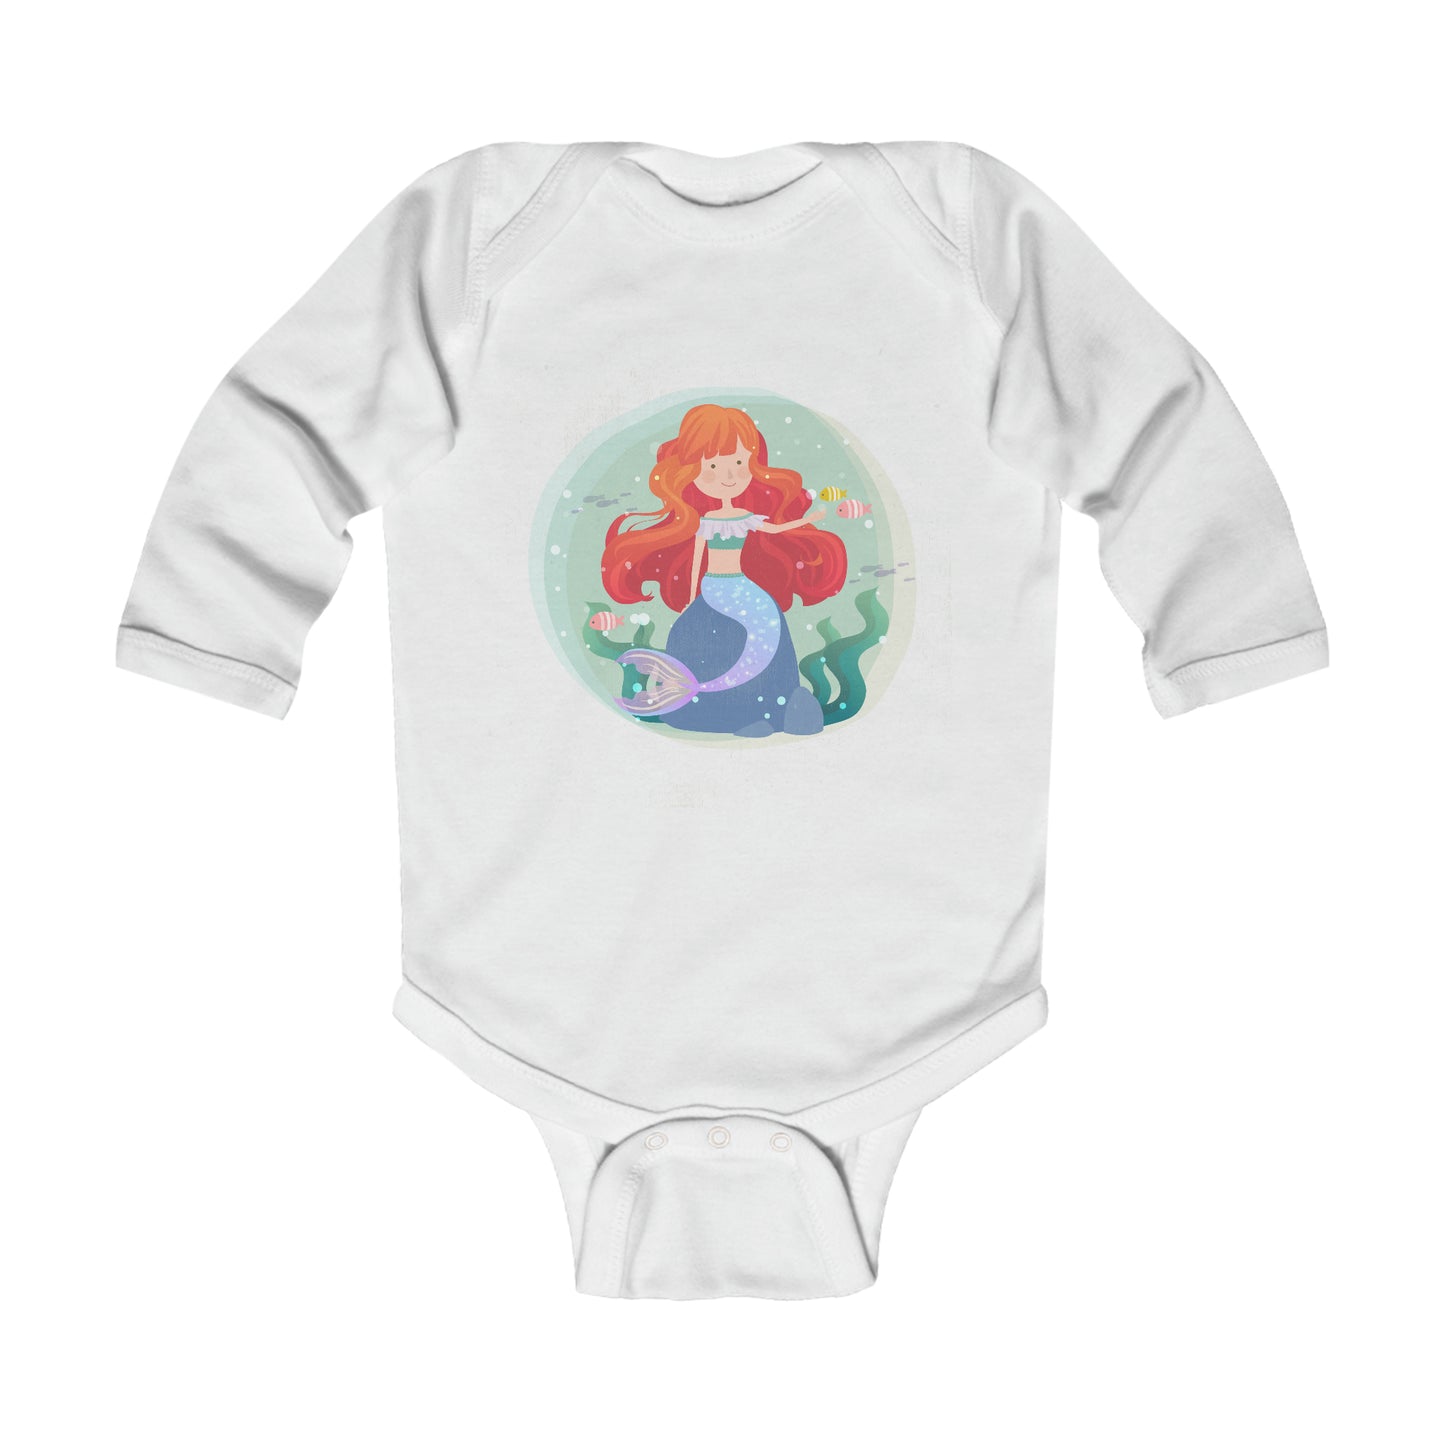 Niccie Adorable Mermaid Infant Long Sleeve Bodysuit